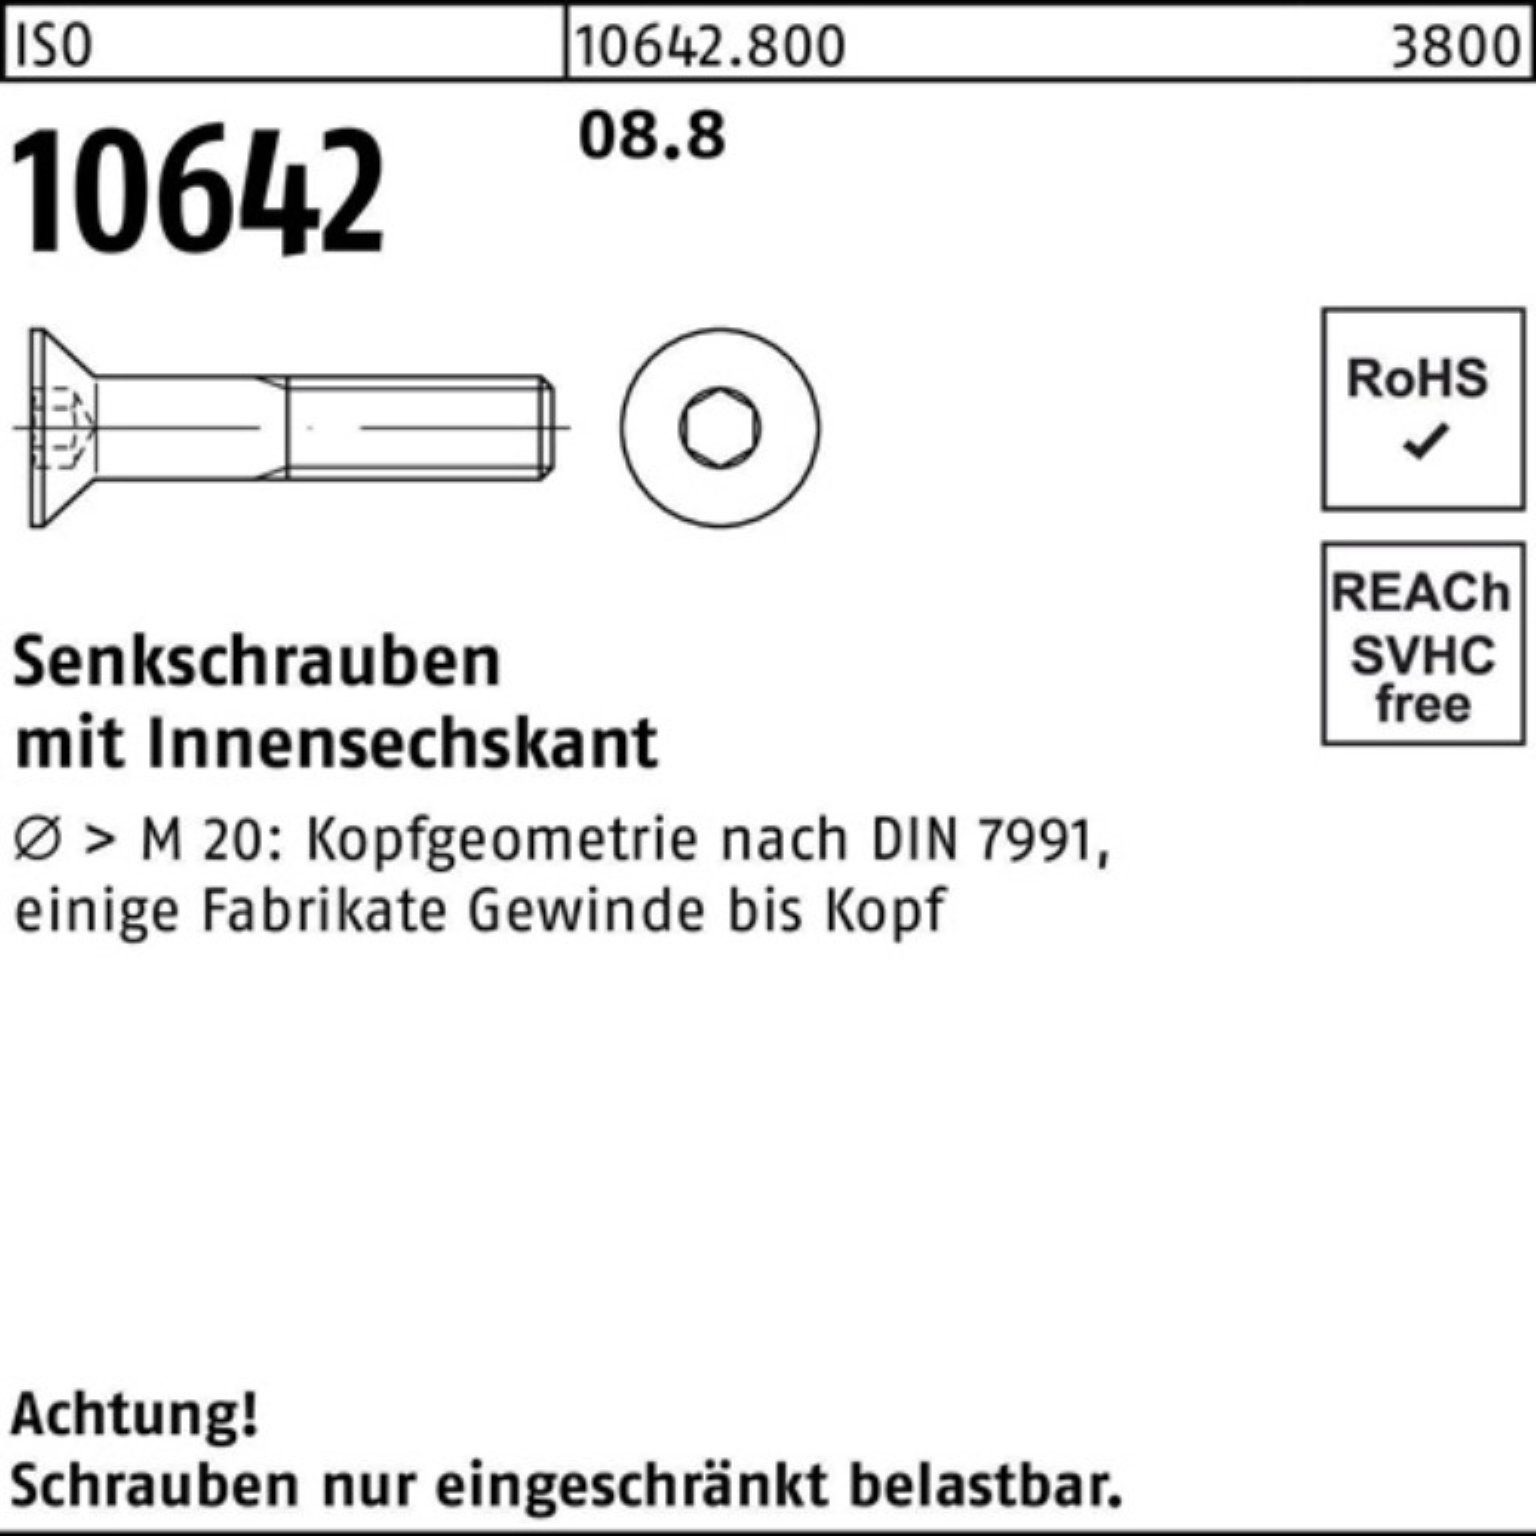 Senkschraube Pack 10642 100er ISO Reyher 20 Stück Innen-6kt ISO 8.8 100 Senkschraube M5x